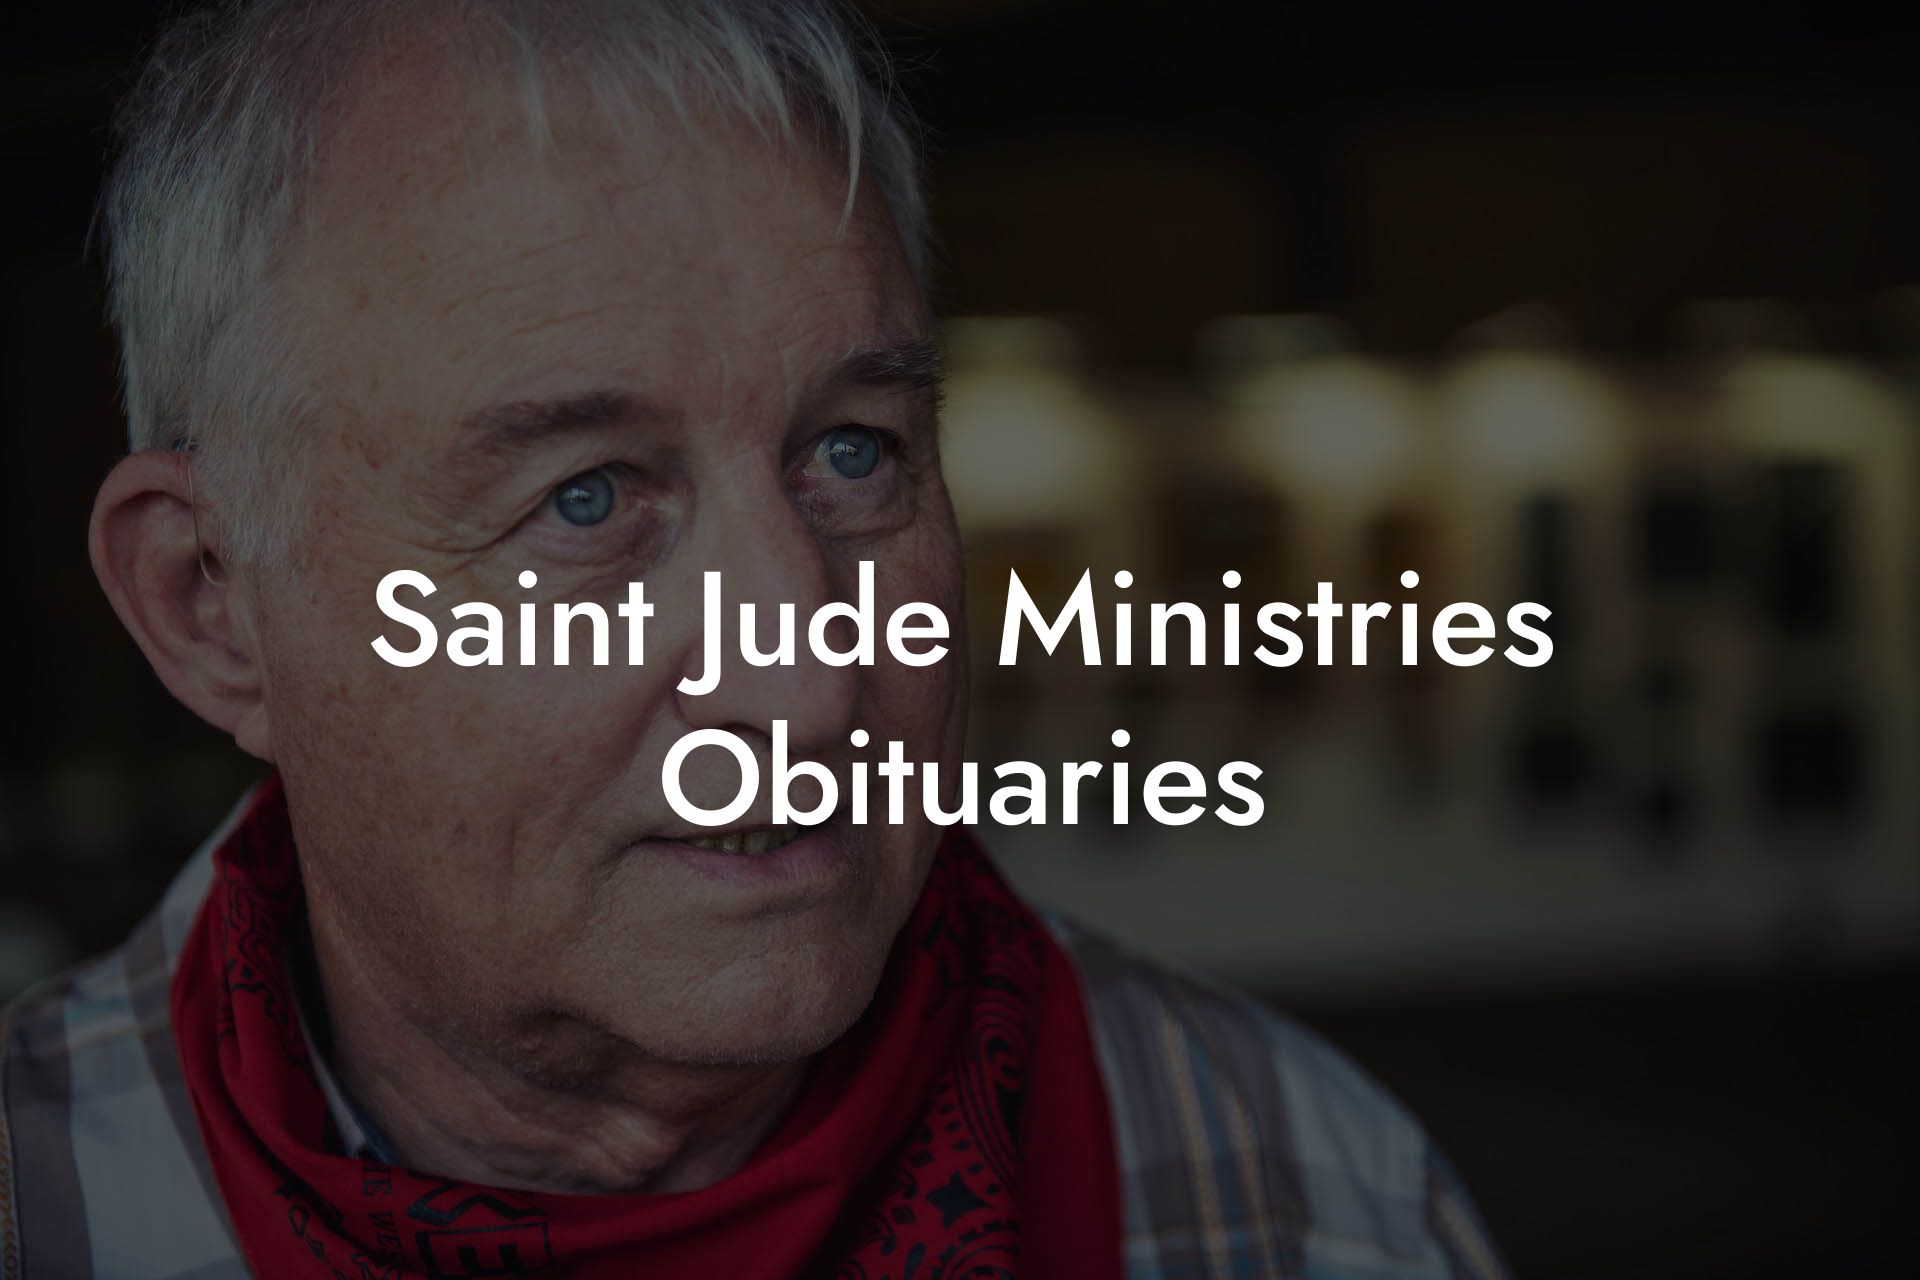 Saint Jude Ministries Obituaries